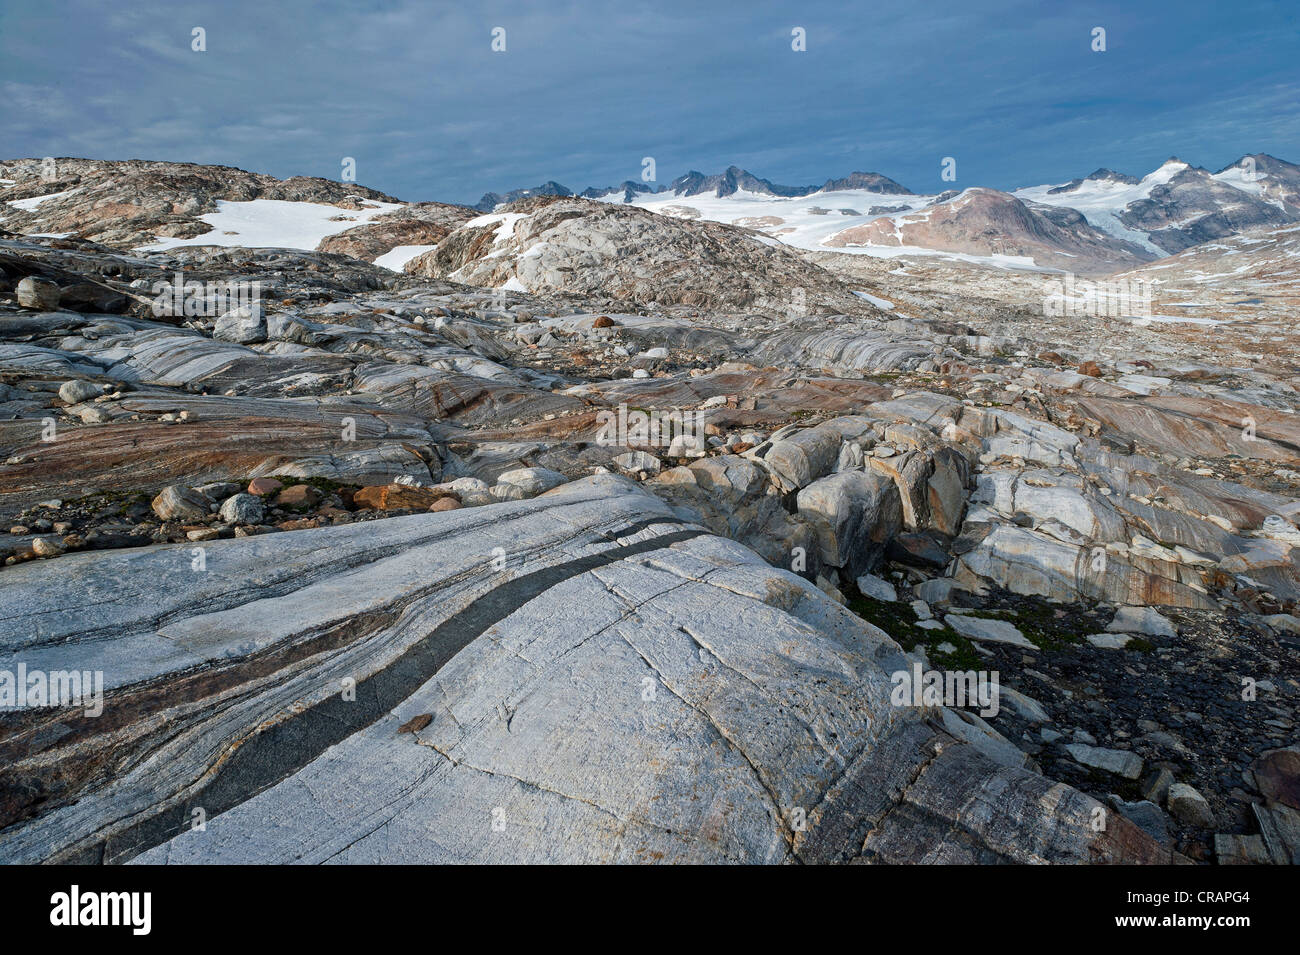 Les formations rocheuses en Mittivakkat, Glacier de l'île d'Ammassalik, dans l'Est du Groenland, Greenland Banque D'Images